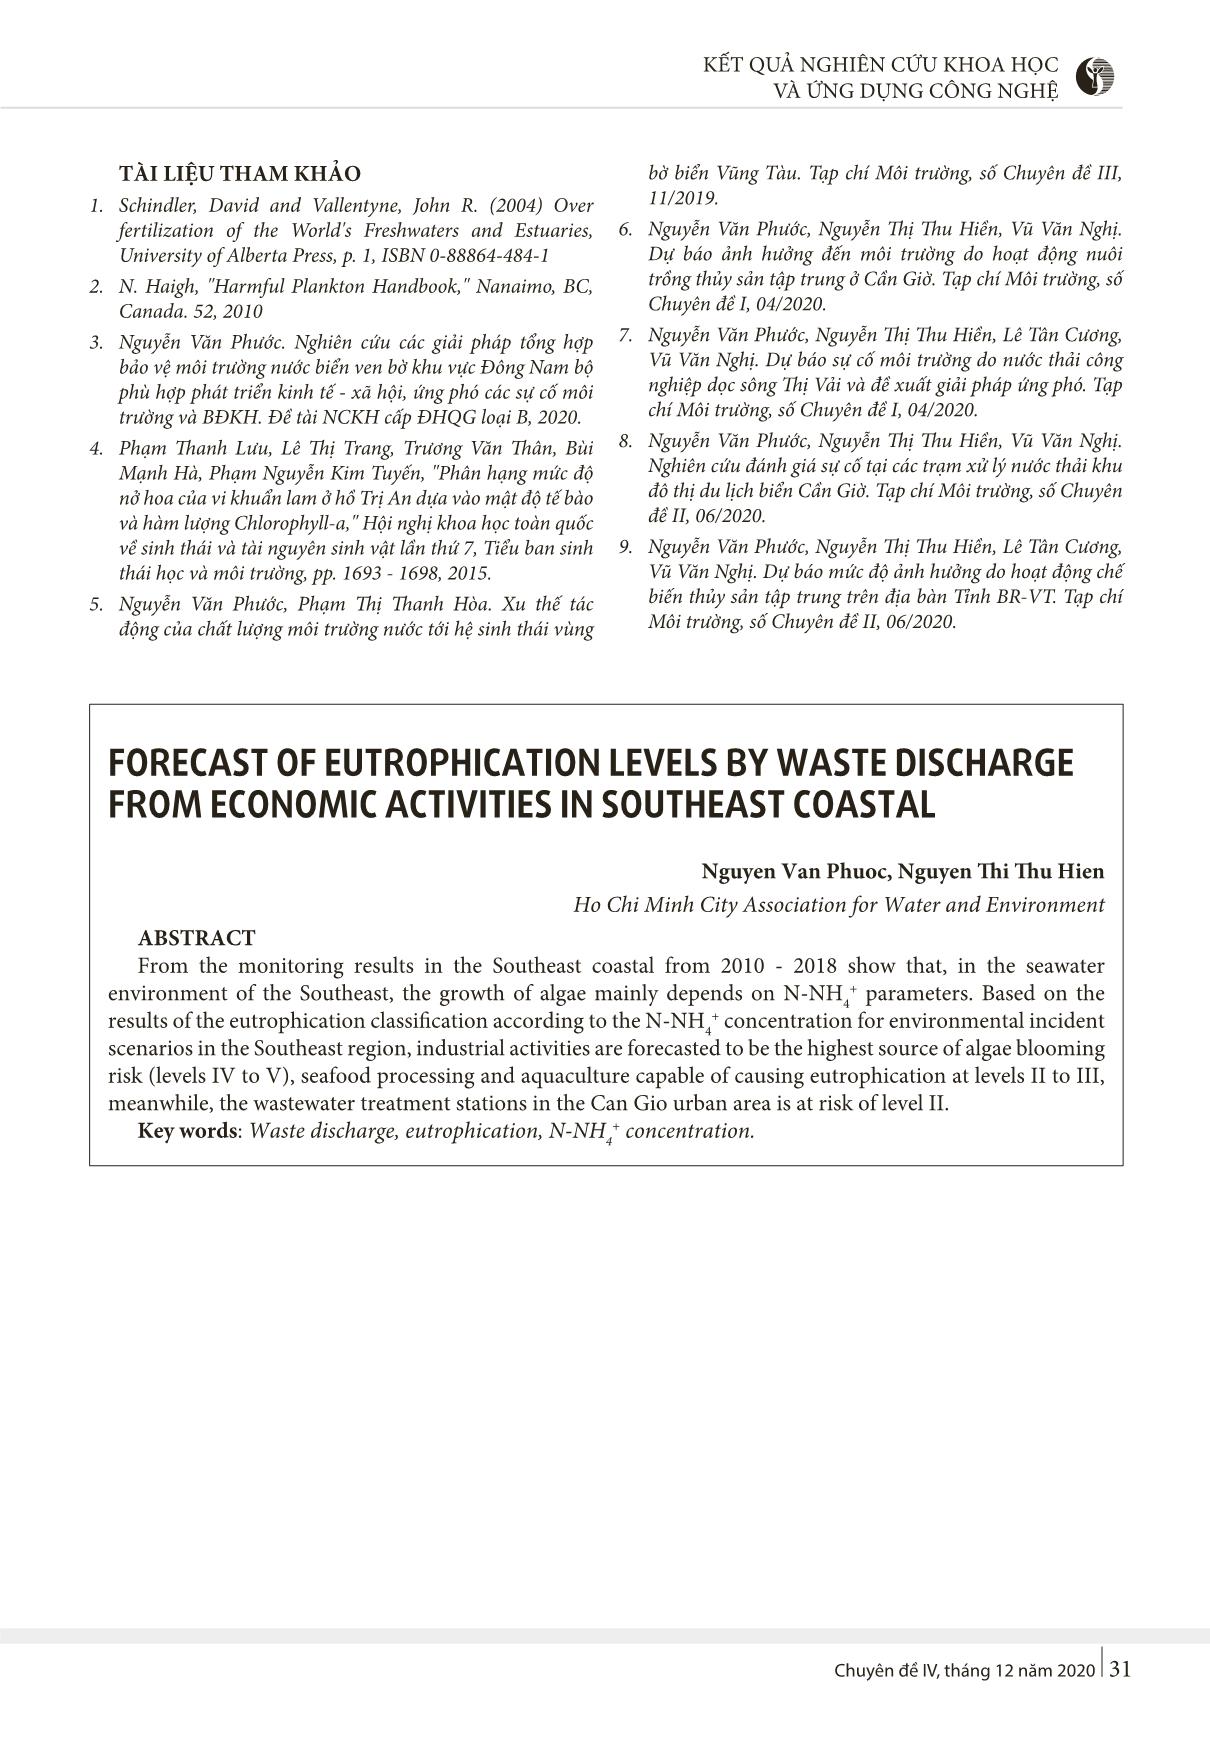 Dự báo mức độ phú dưỡng hóa do sự cố xả nước thải từ các hoạt động kinh tế ven biển Đông Nam Bộ trang 5